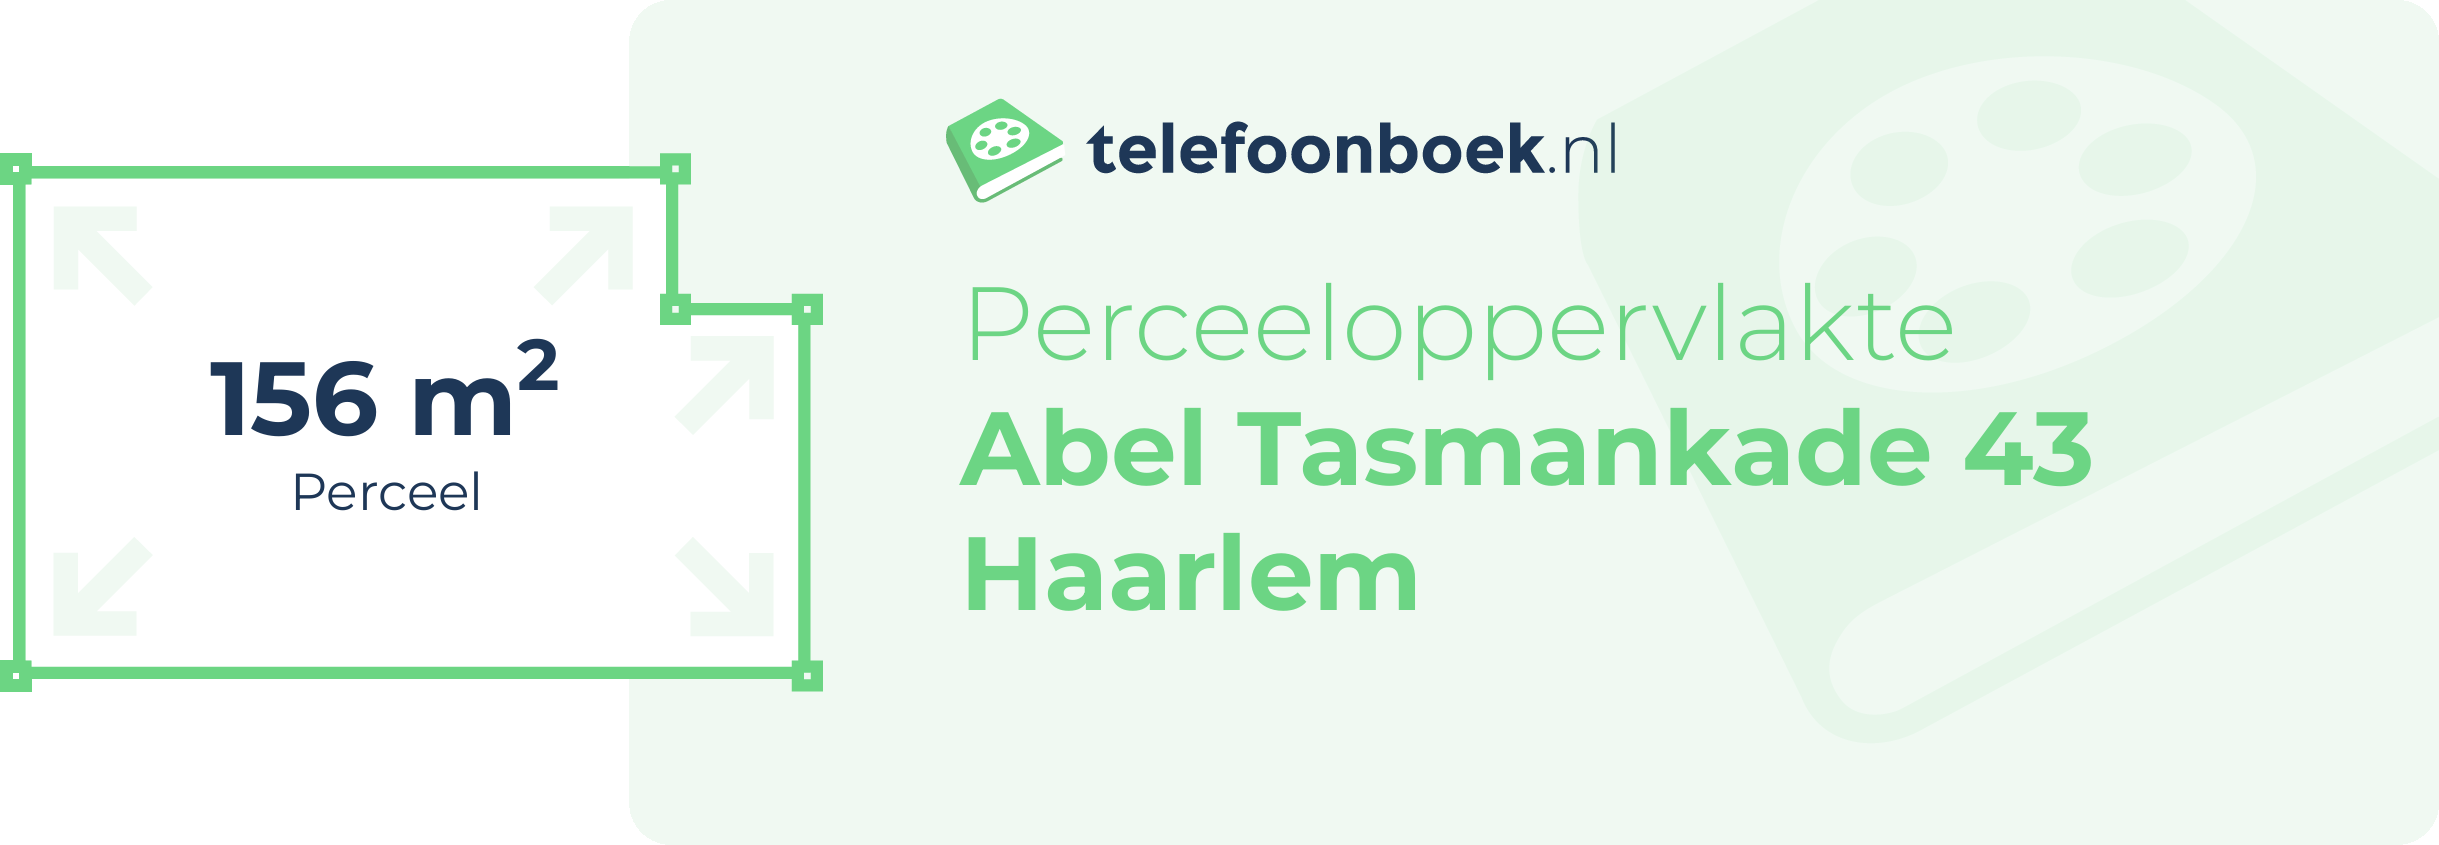 Perceeloppervlakte Abel Tasmankade 43 Haarlem